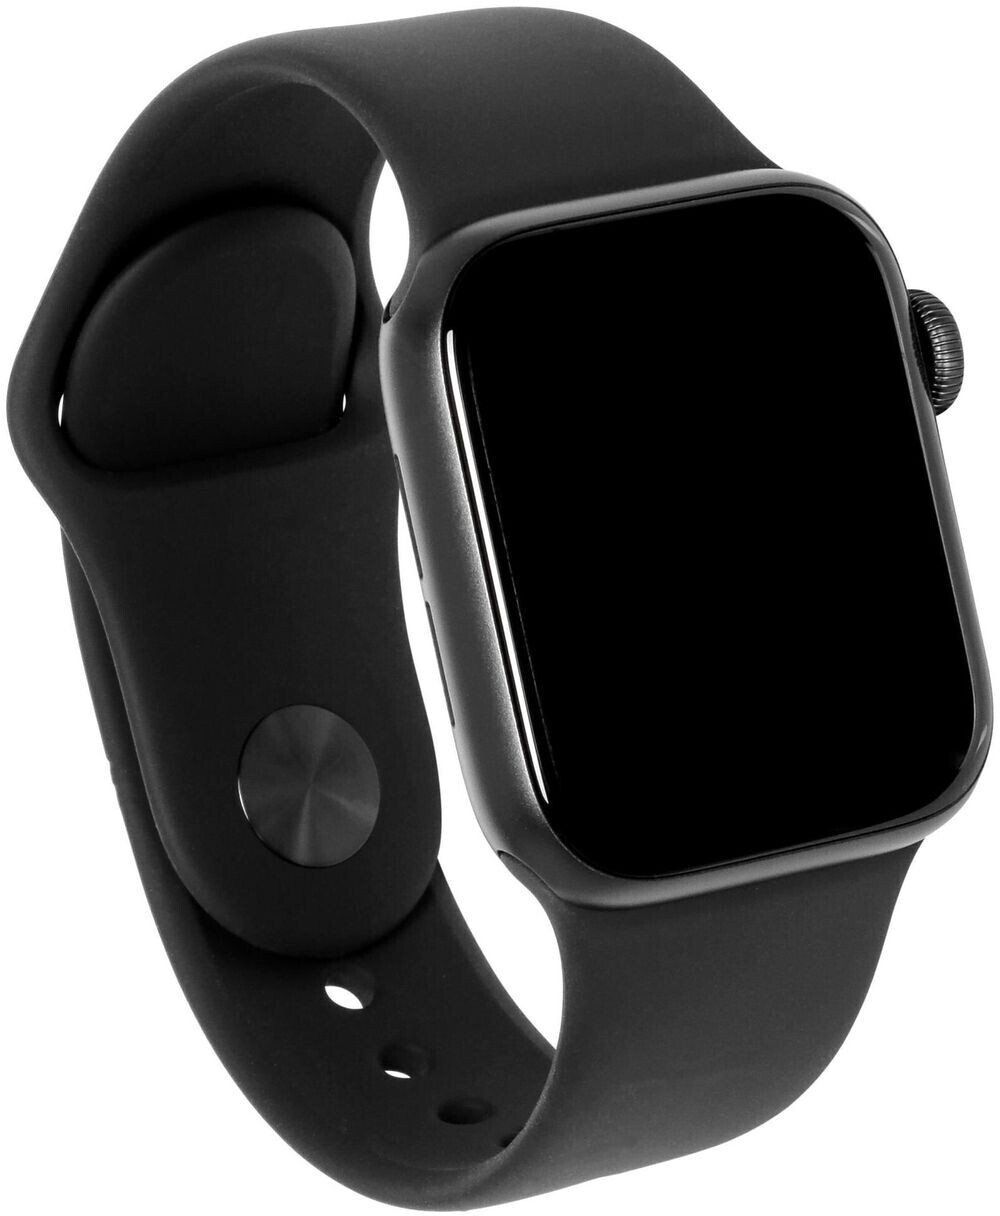 Apple watch se 1 44mm. Apple watch se 44mm. Apple watch 5 Series 44 mm Space Gray. Apple watch se 44mm Space Grey. Apple watch se 40mm черные.